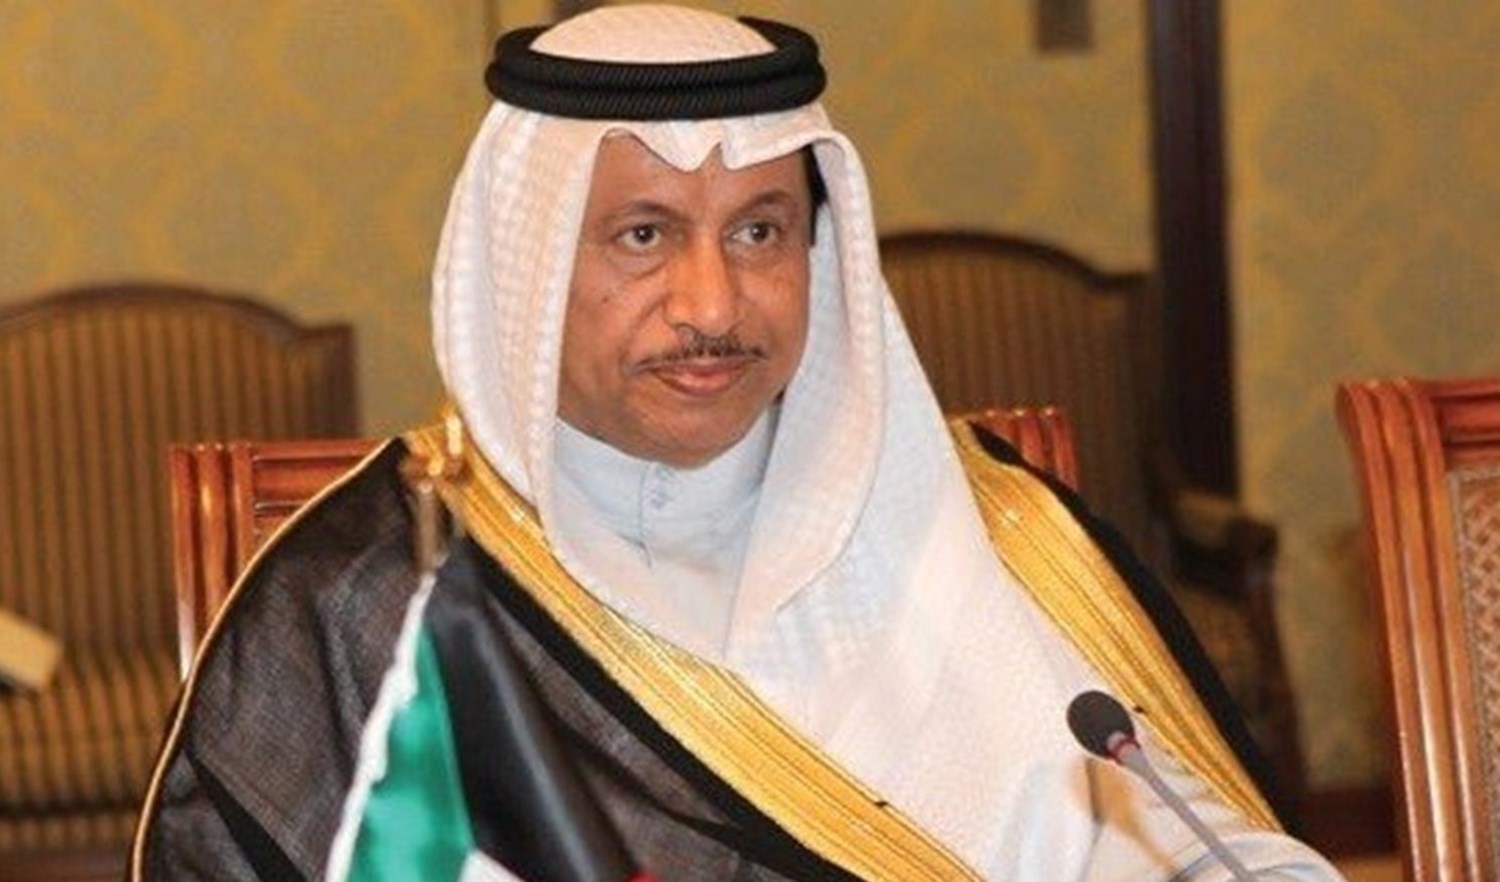 رئيس مجلس الوزراء الكويتي يقدم استقالة الحكومة إلى أمير الكويت